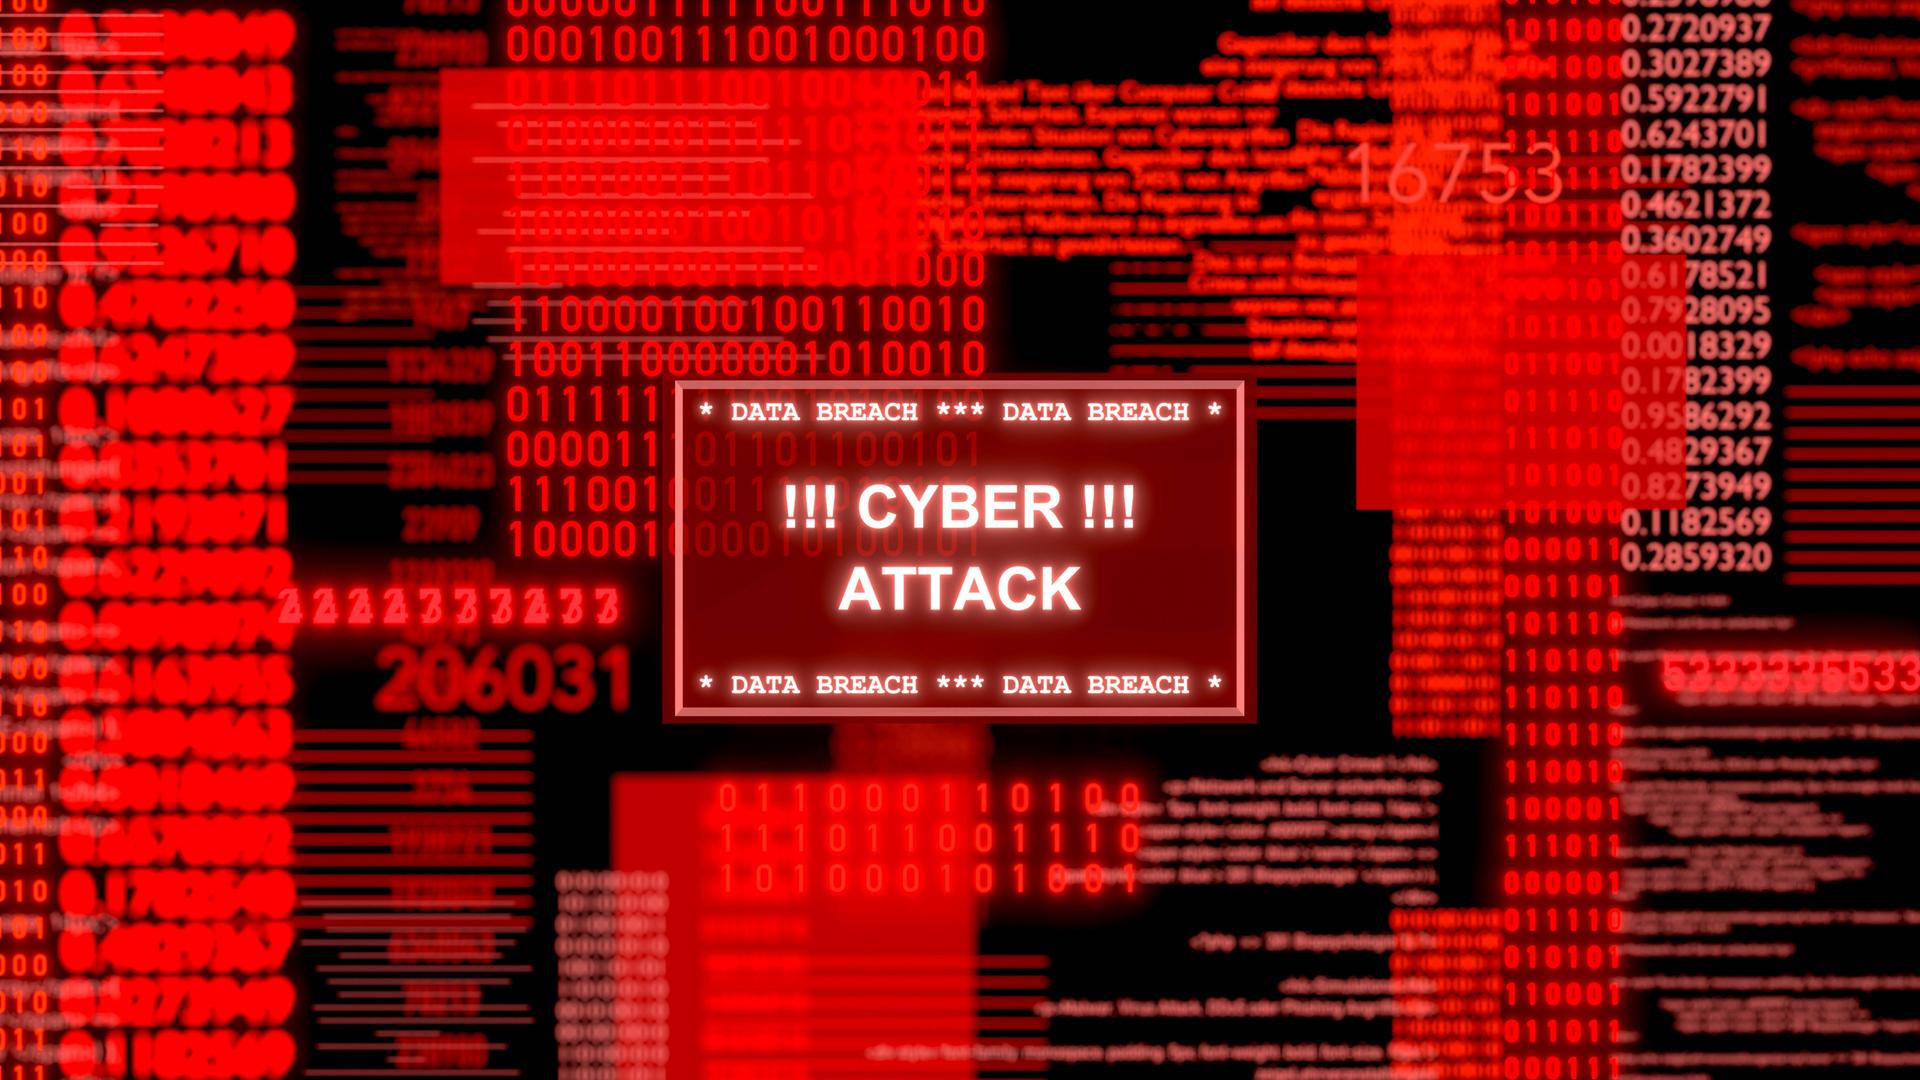 Roter Computerbildschirm mit Datencodes und einem Warnhinweis "Cyber Attack"